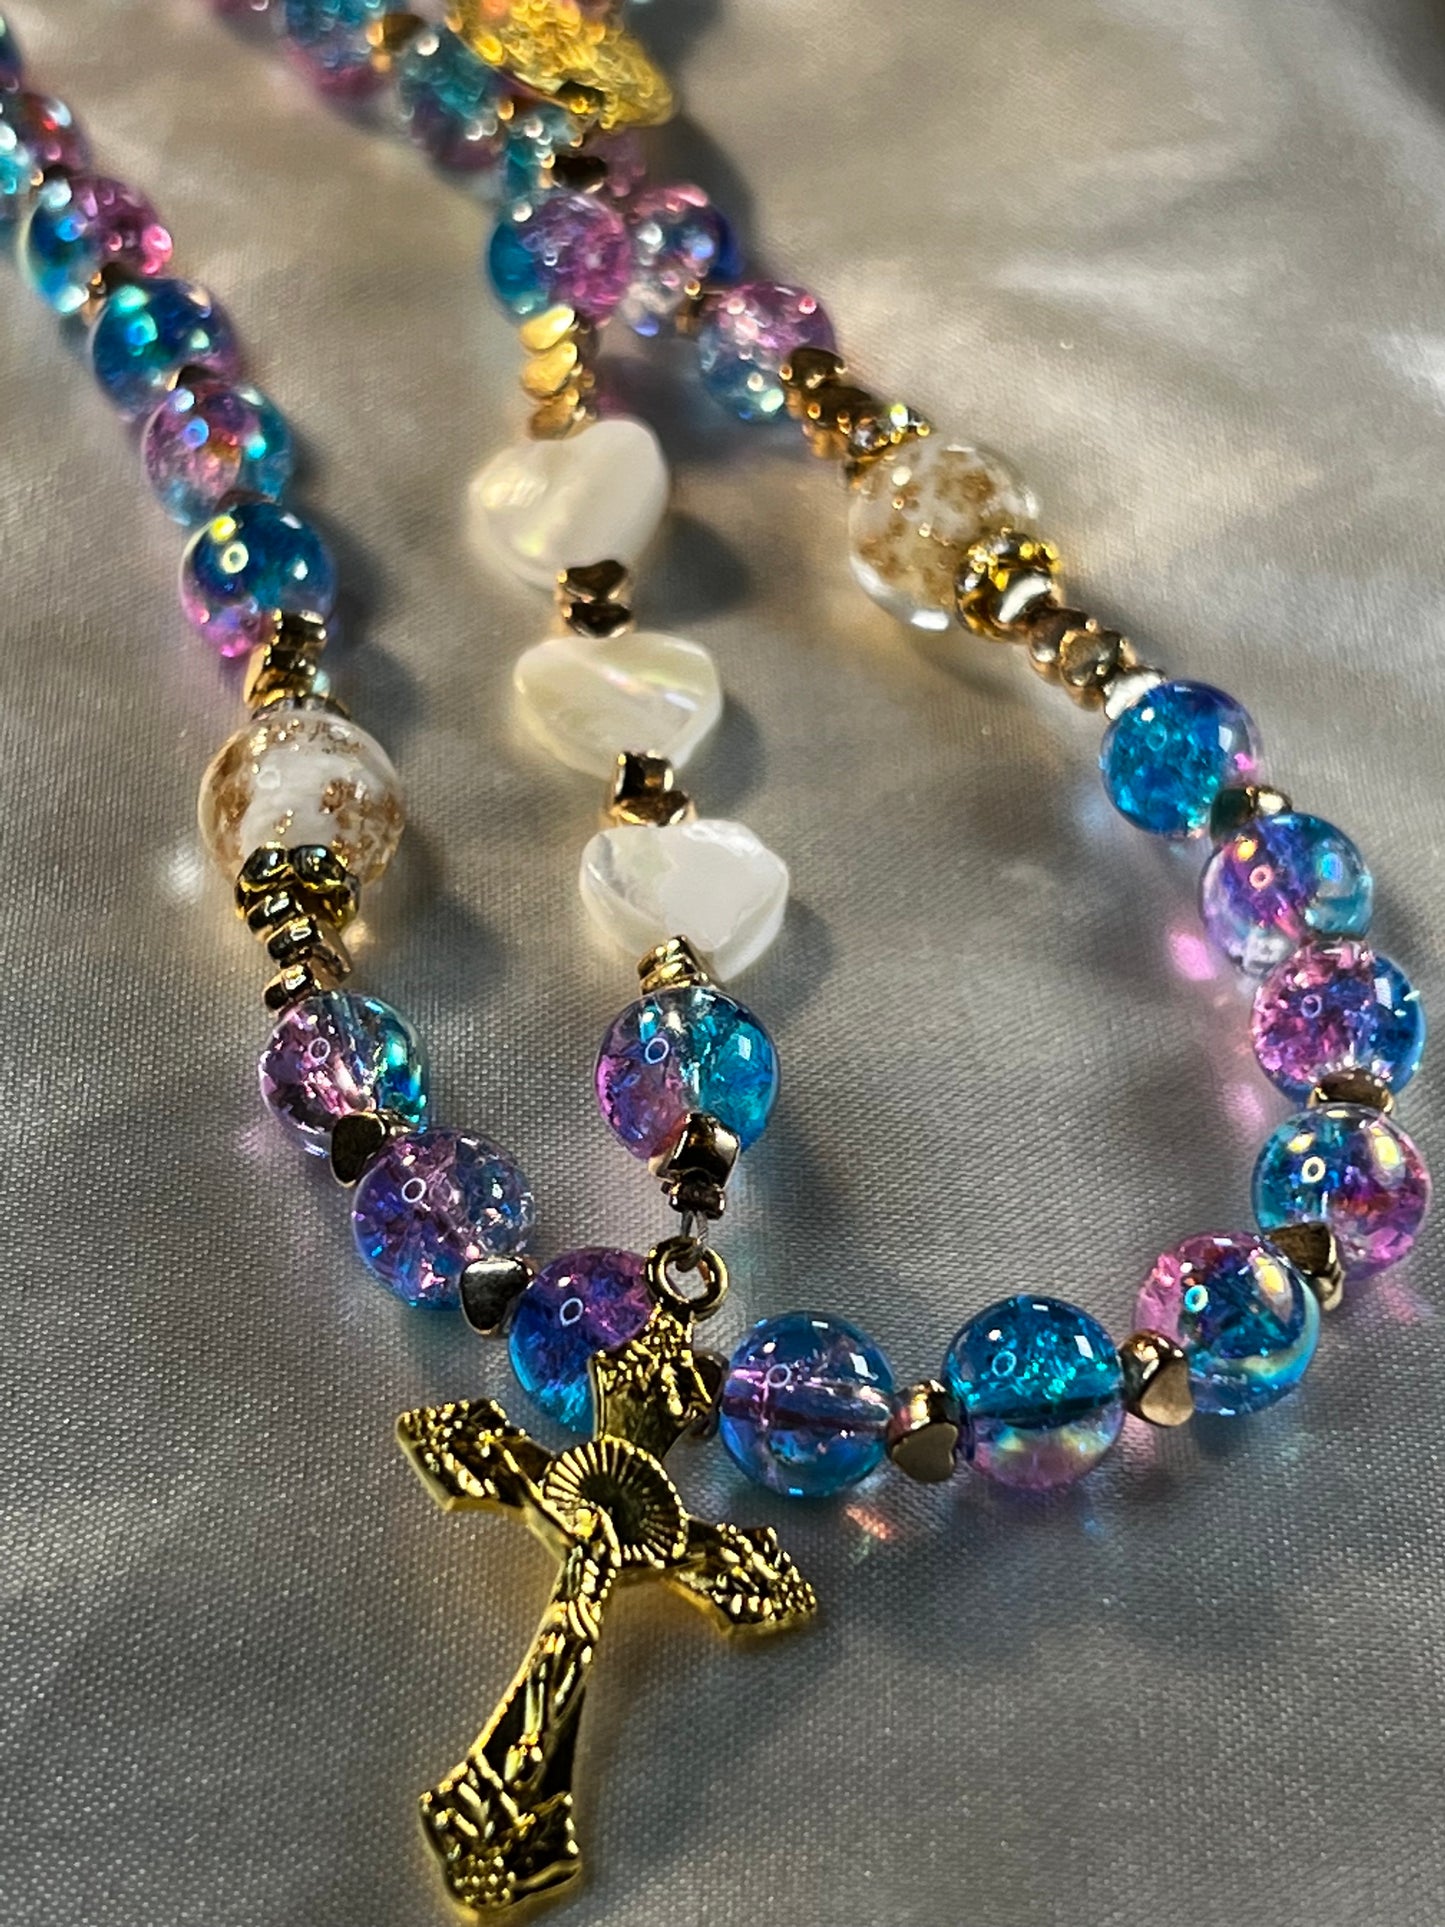 Mermaid Glass Rosary